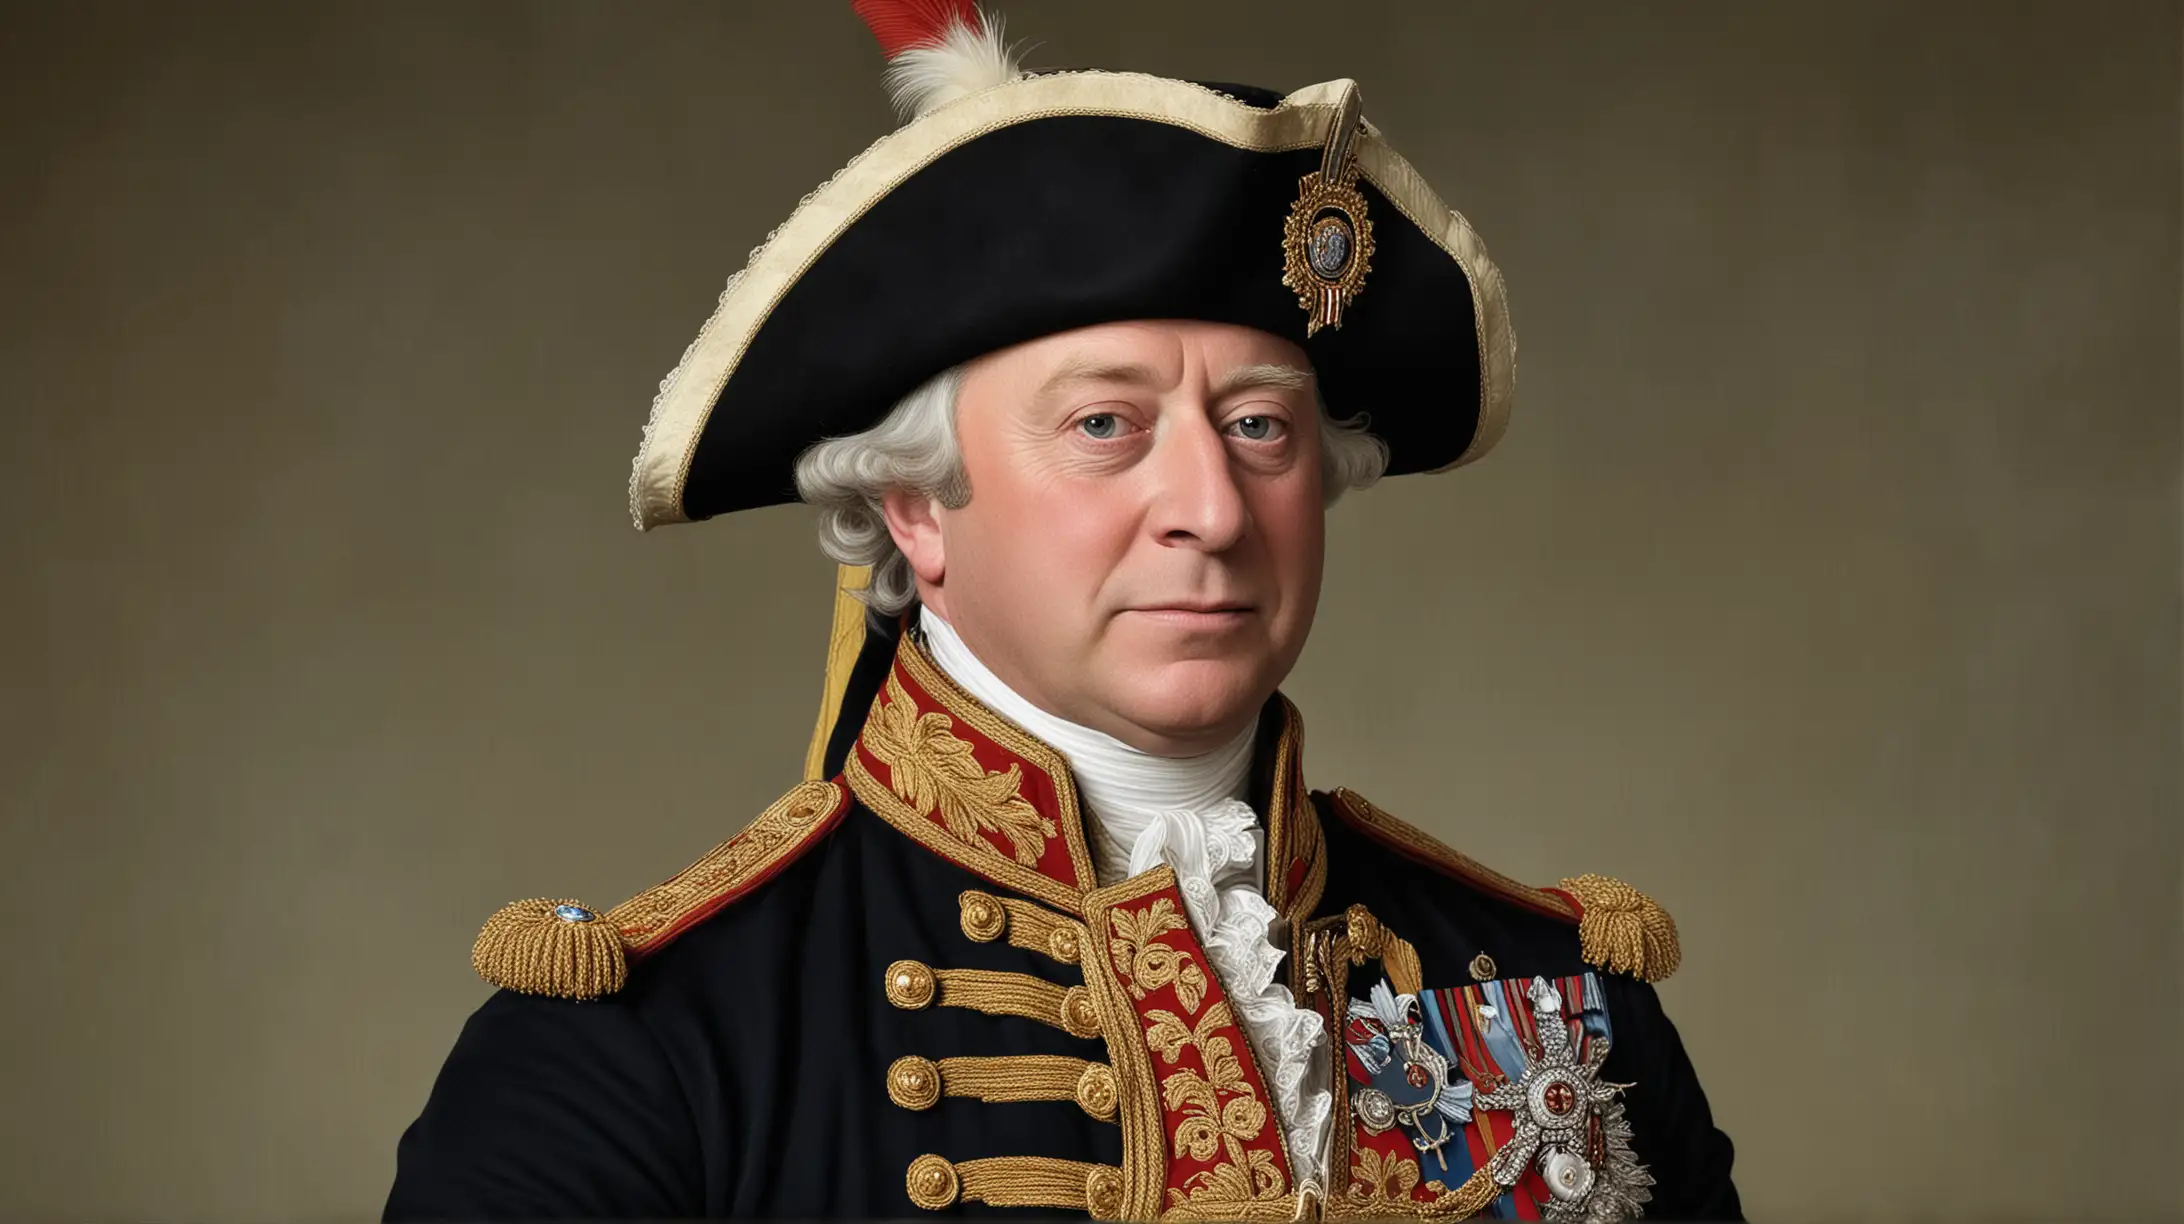 Portrait of King George III in Regal Attire